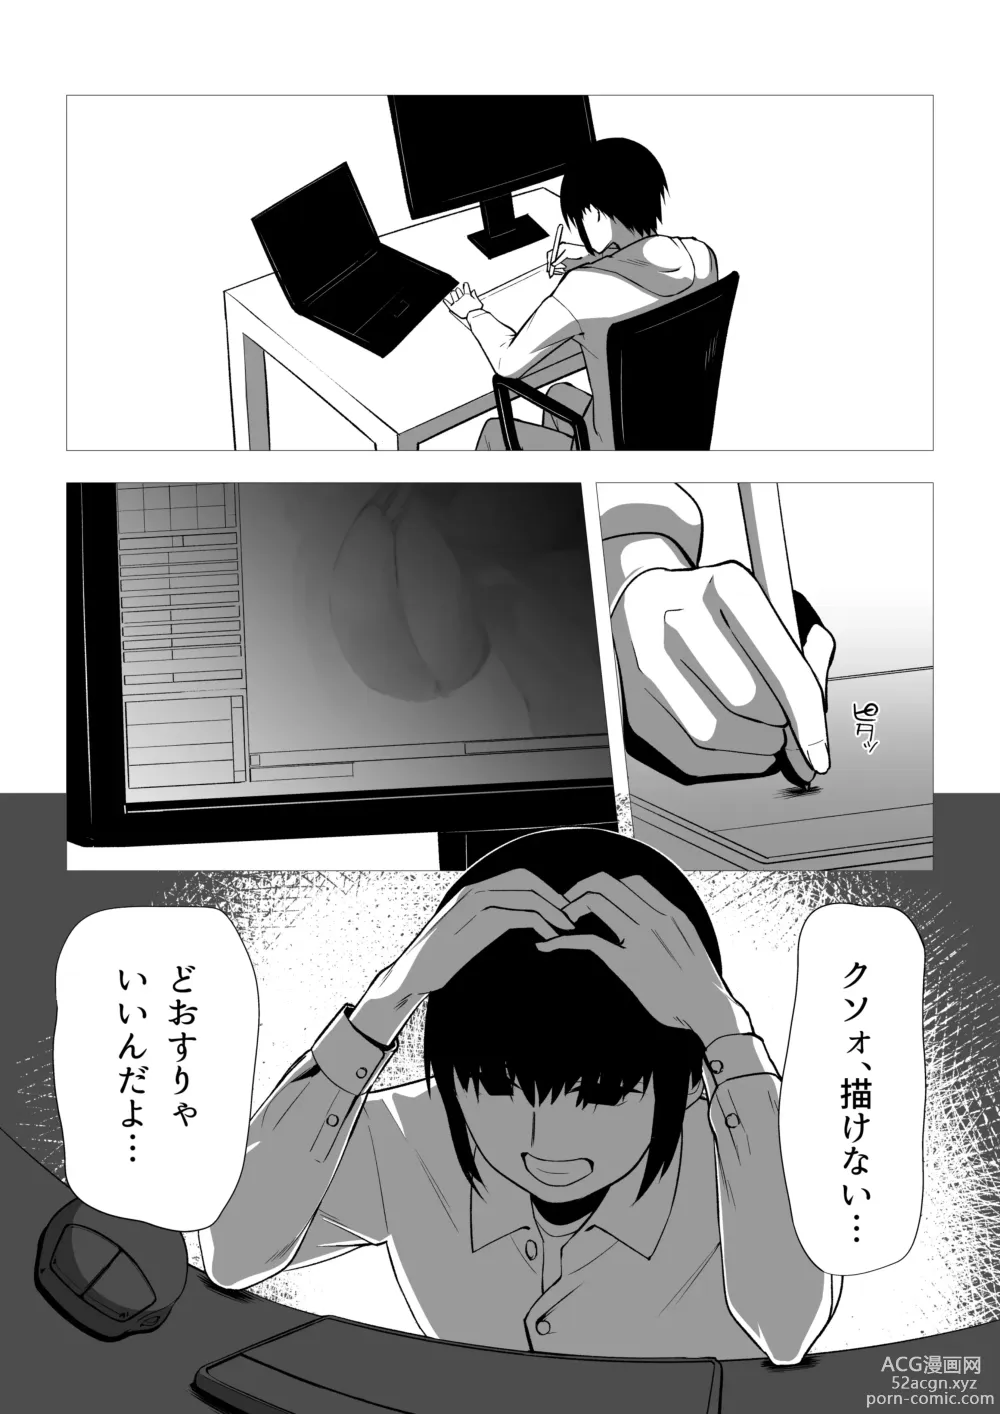 Page 3 of doujinshi Ore wa Aitsu o Wakaraseru